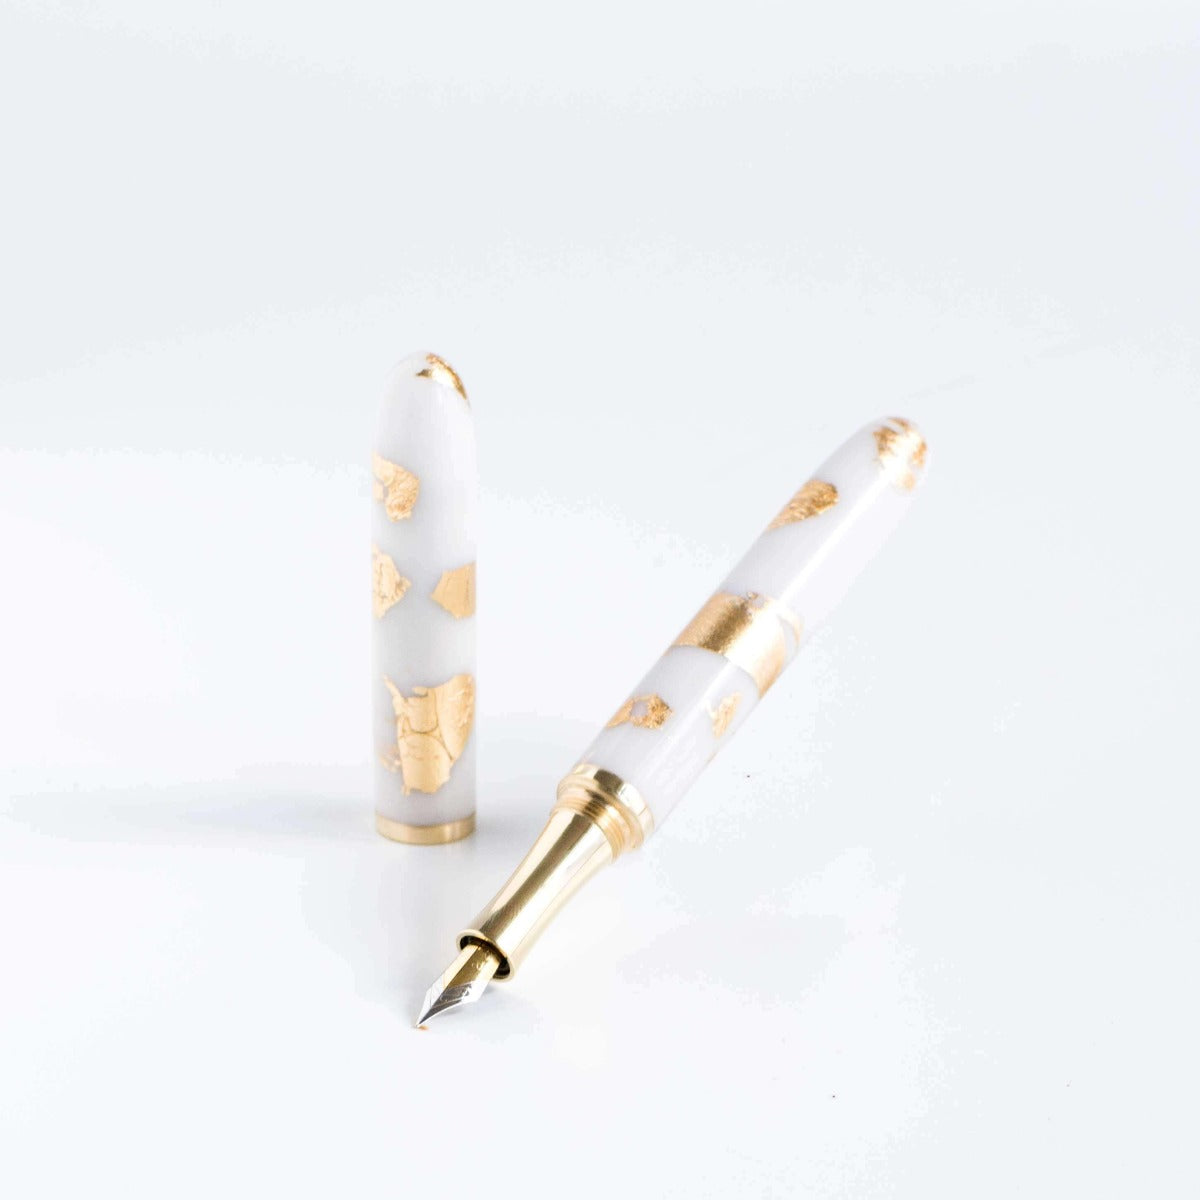 24ct Gold Leaf - Studio Pen - tomsstudio24ct Gold Leaf - Studio Pen